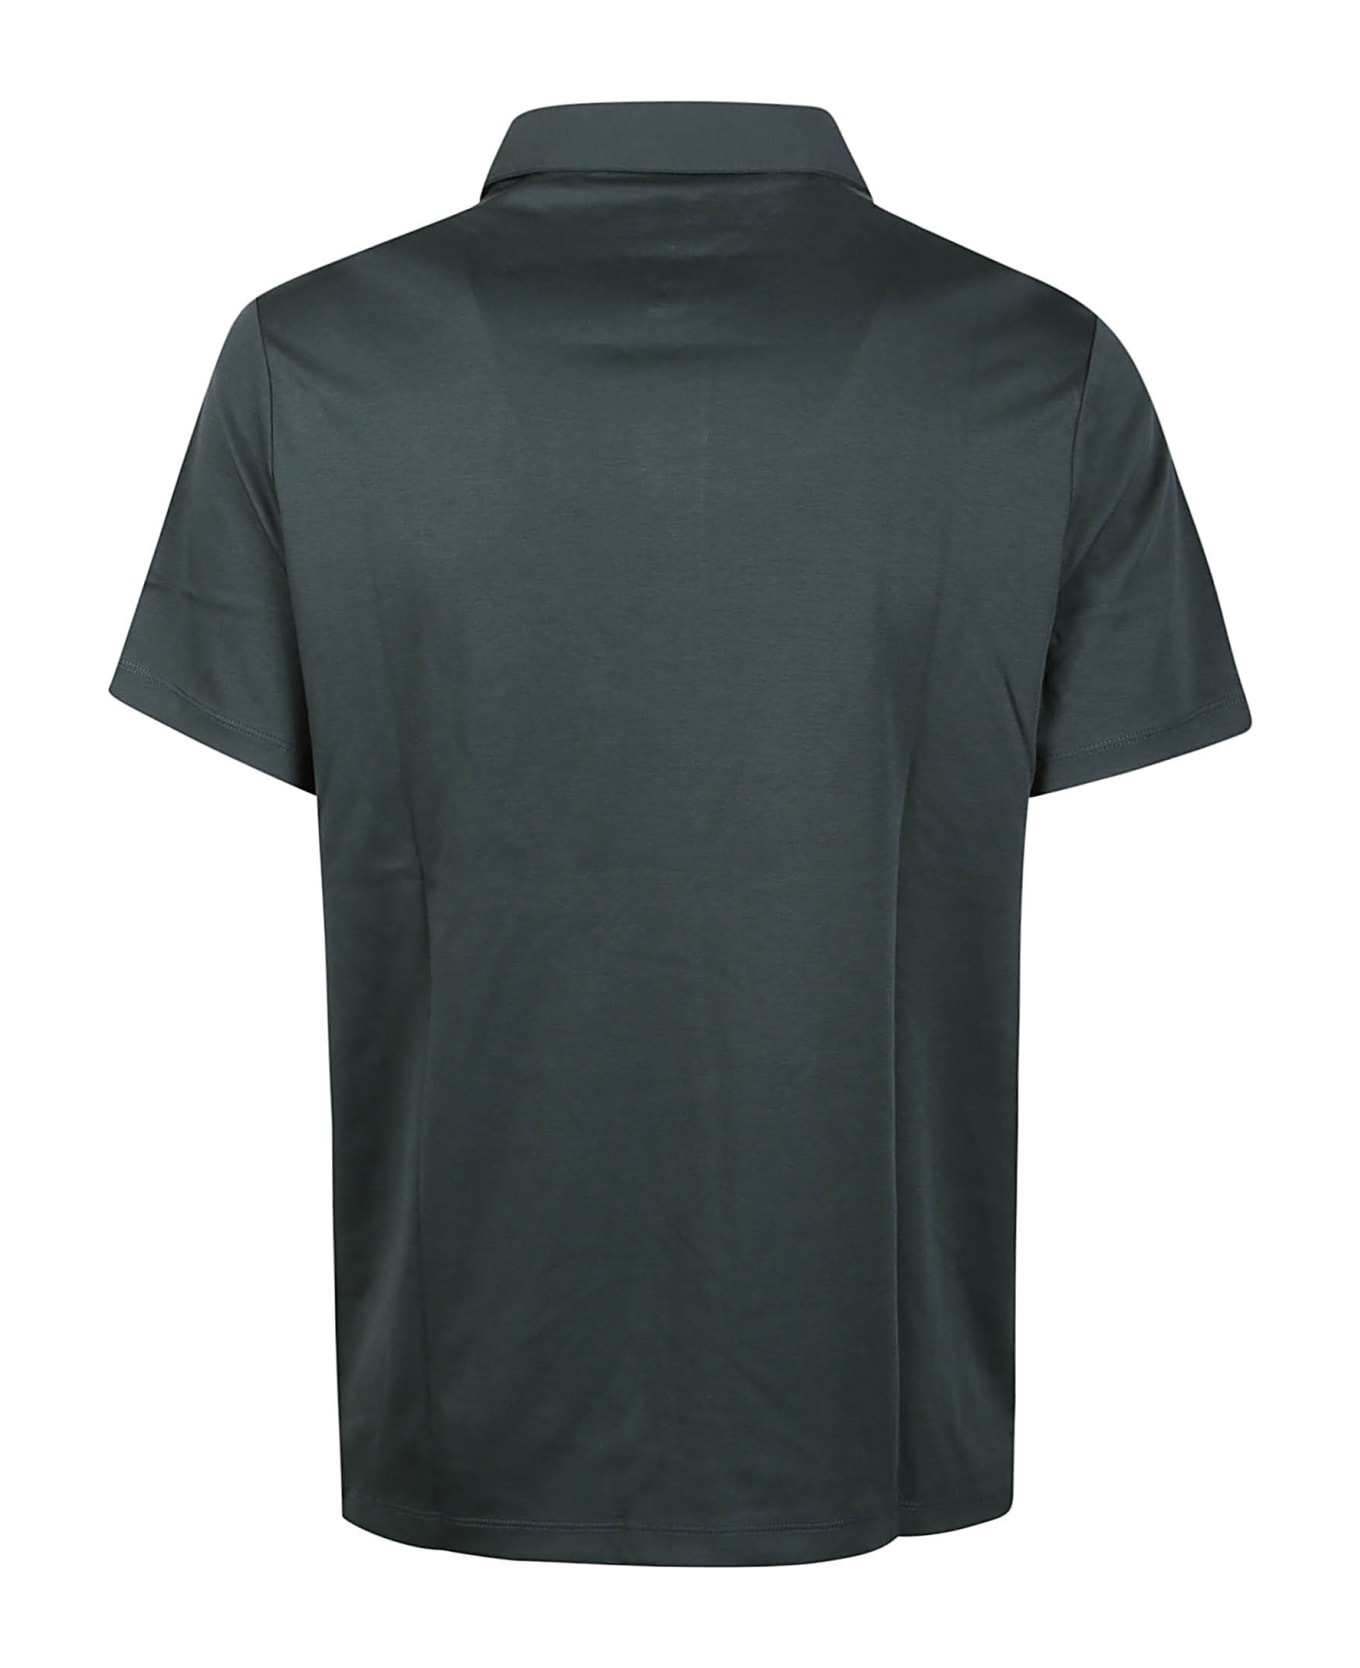 Michael Kors Sleek Polo Shirt - Loden